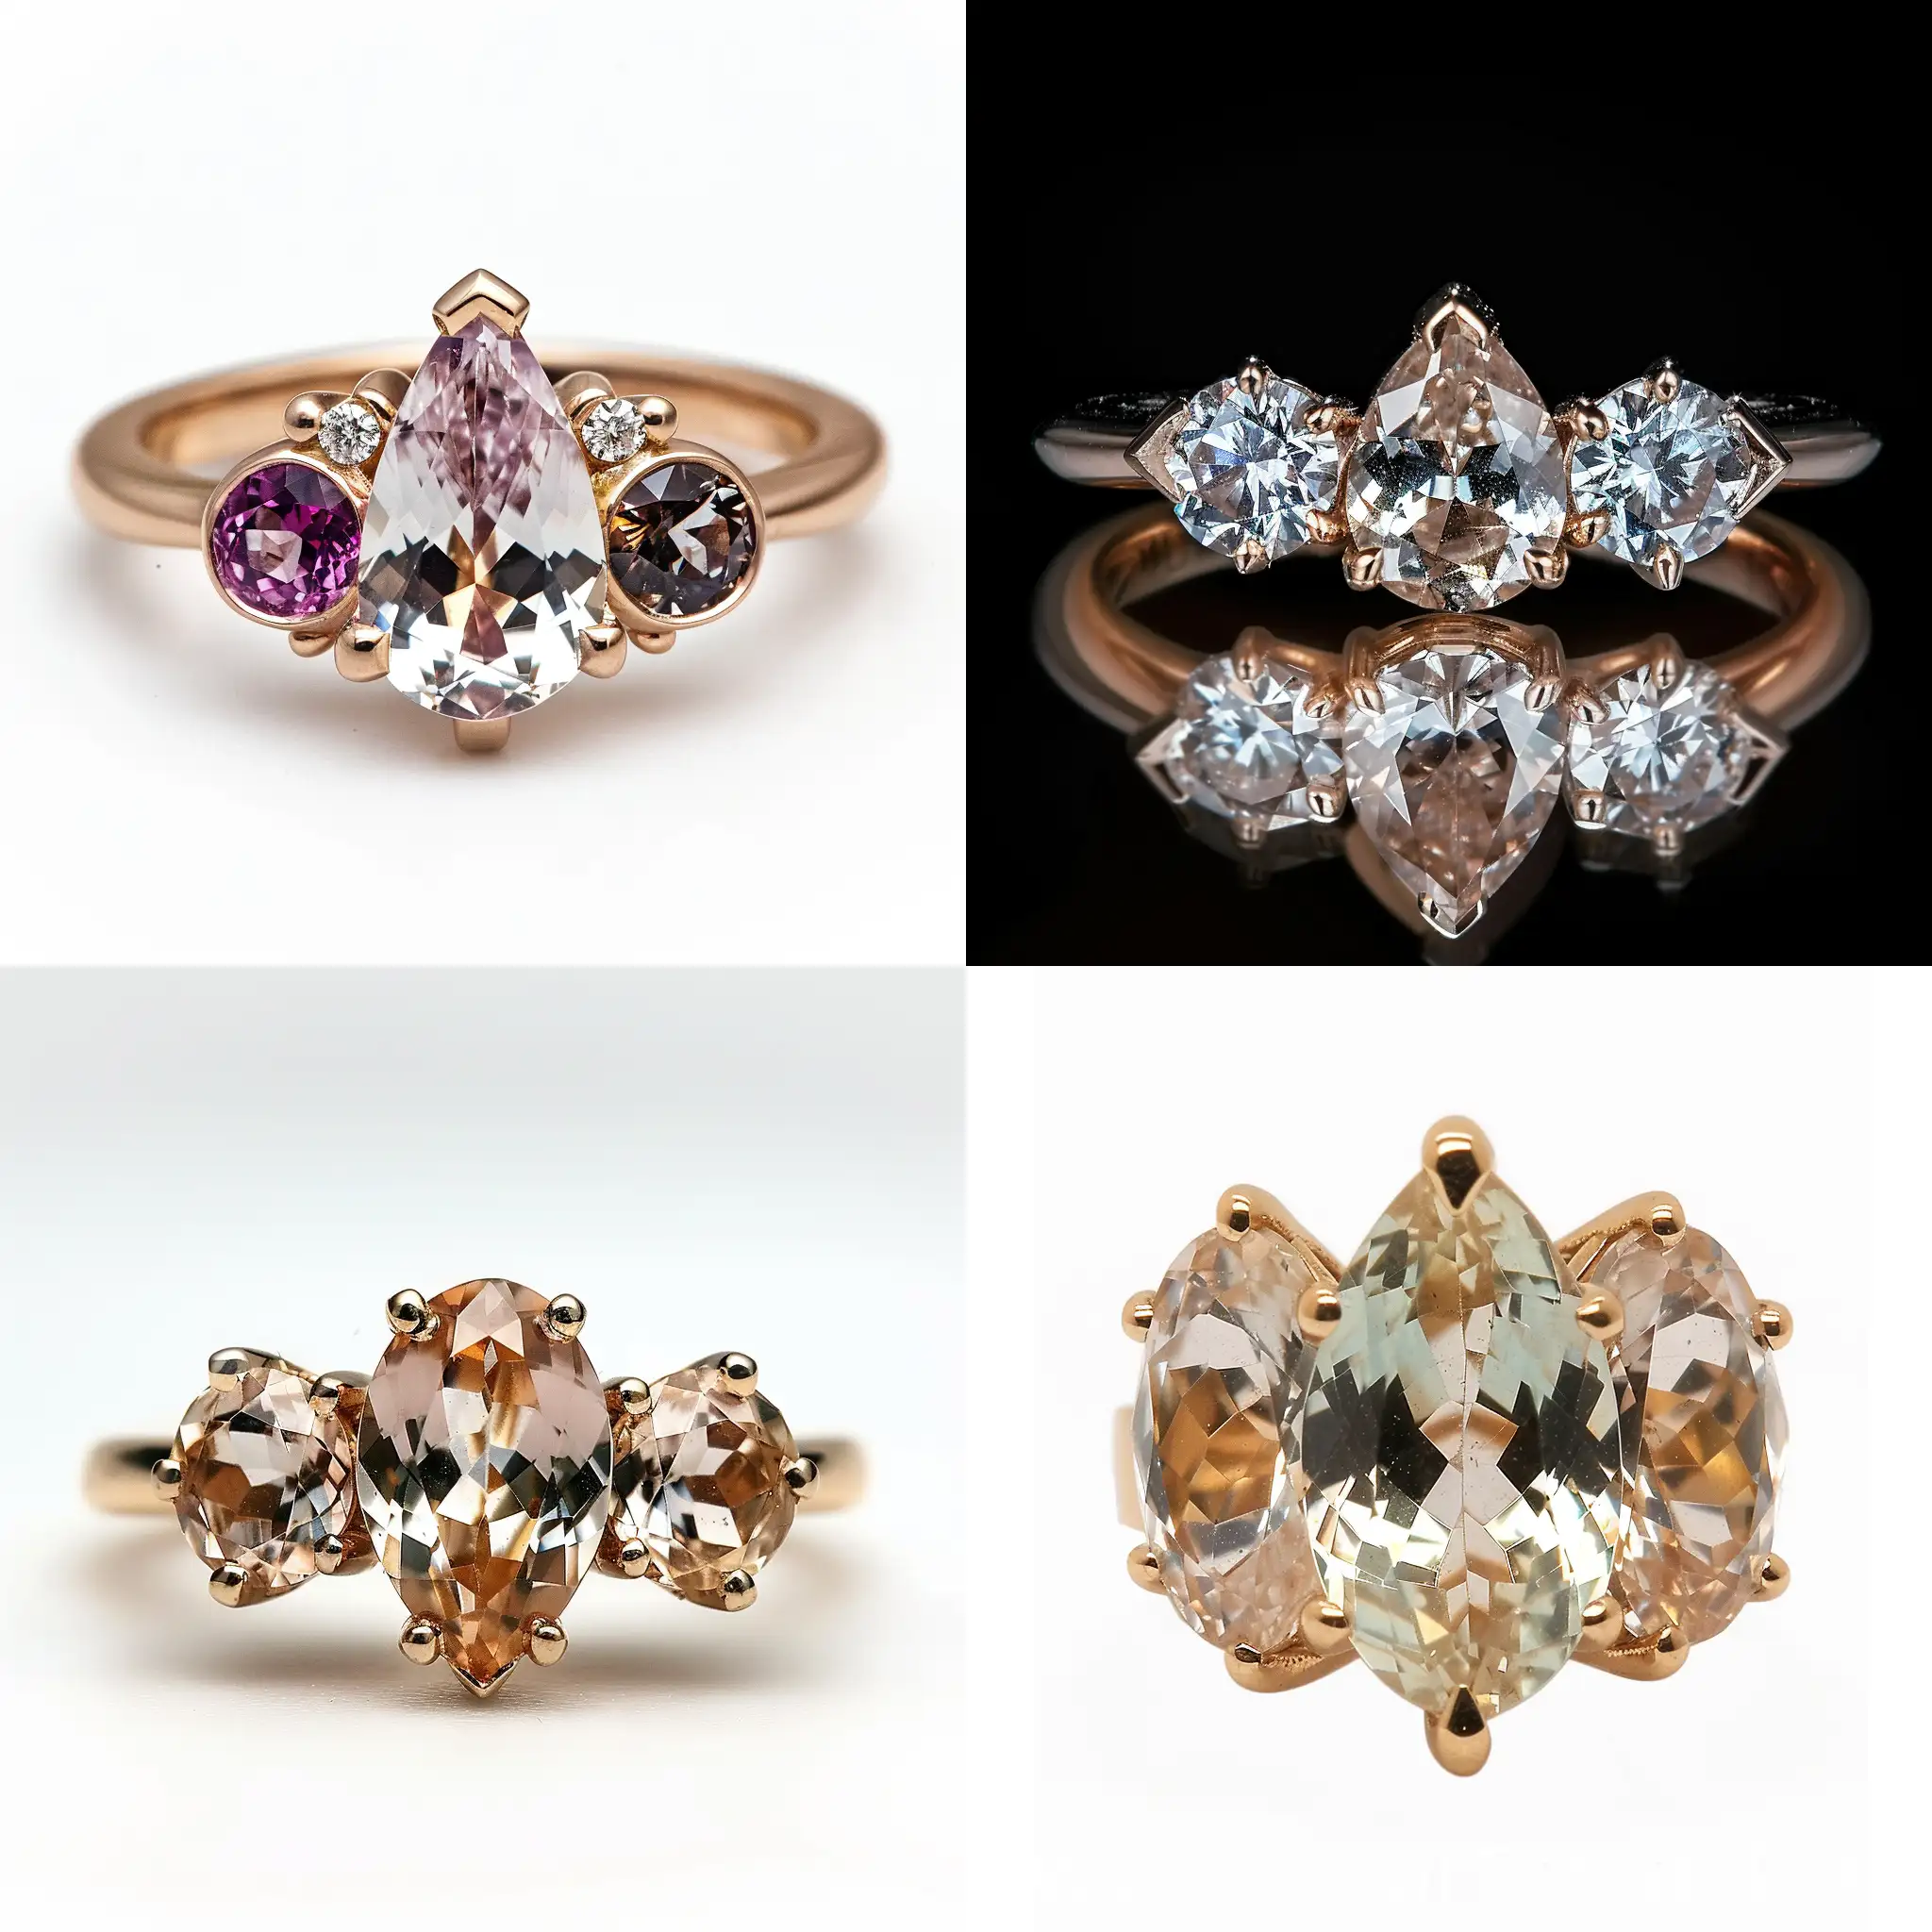 女士戒指，三颗宝石，中间的宝石是梨形刻面宝石，两边的宝石是圆形的，戒指由黄金制成，宝石是钻石